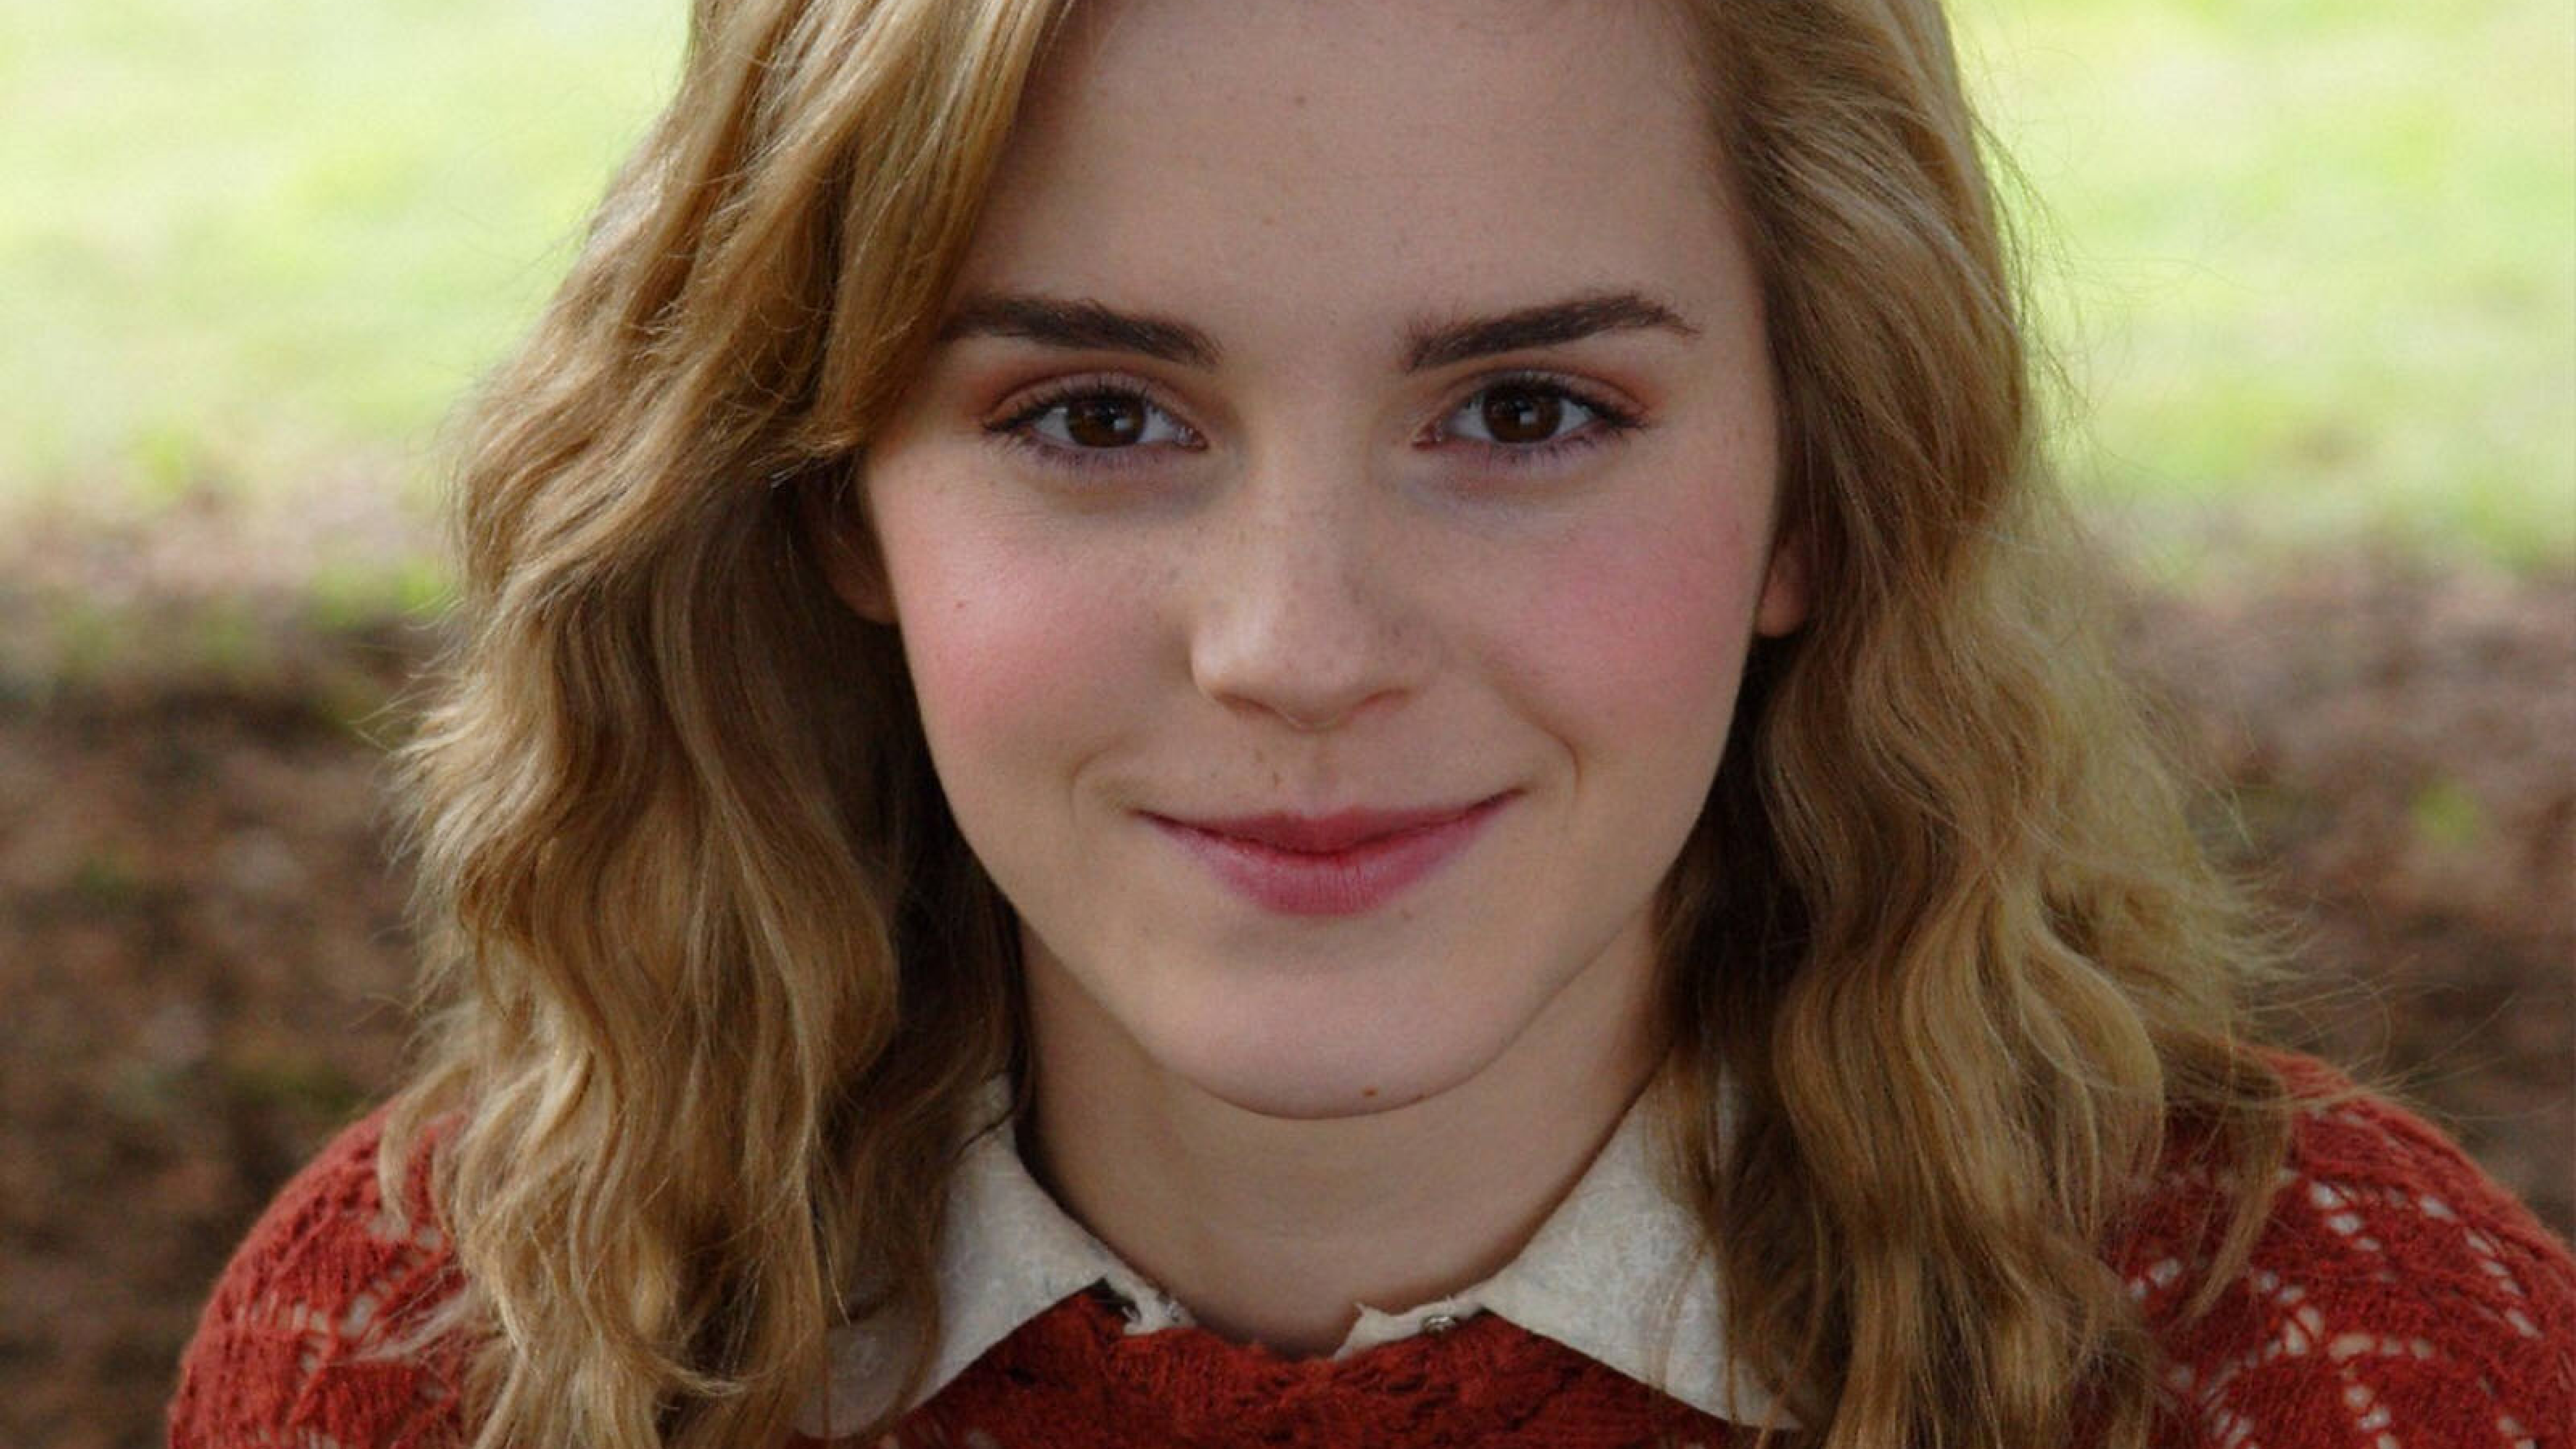 7680x4320 Emma Watson Smile Red Look 8K Wallpaper, HD ...